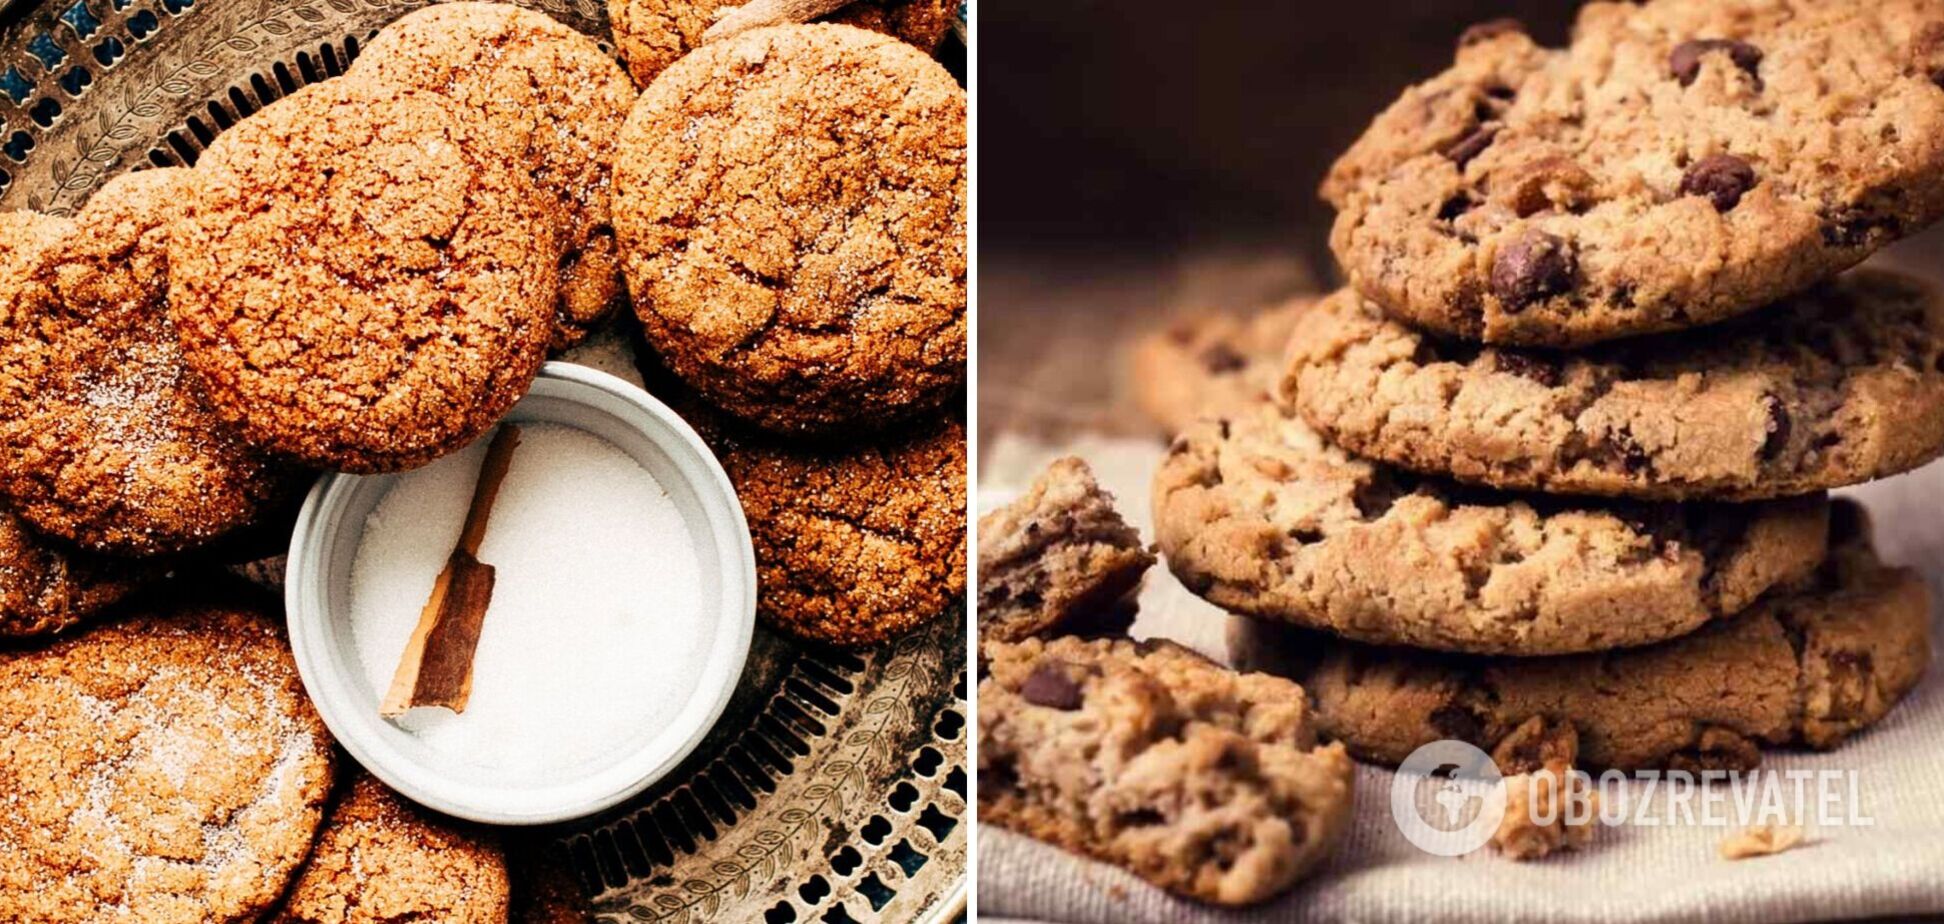 Хрумке вівсяне печиво з шоколадом за 30 хвилин: простий рецепт